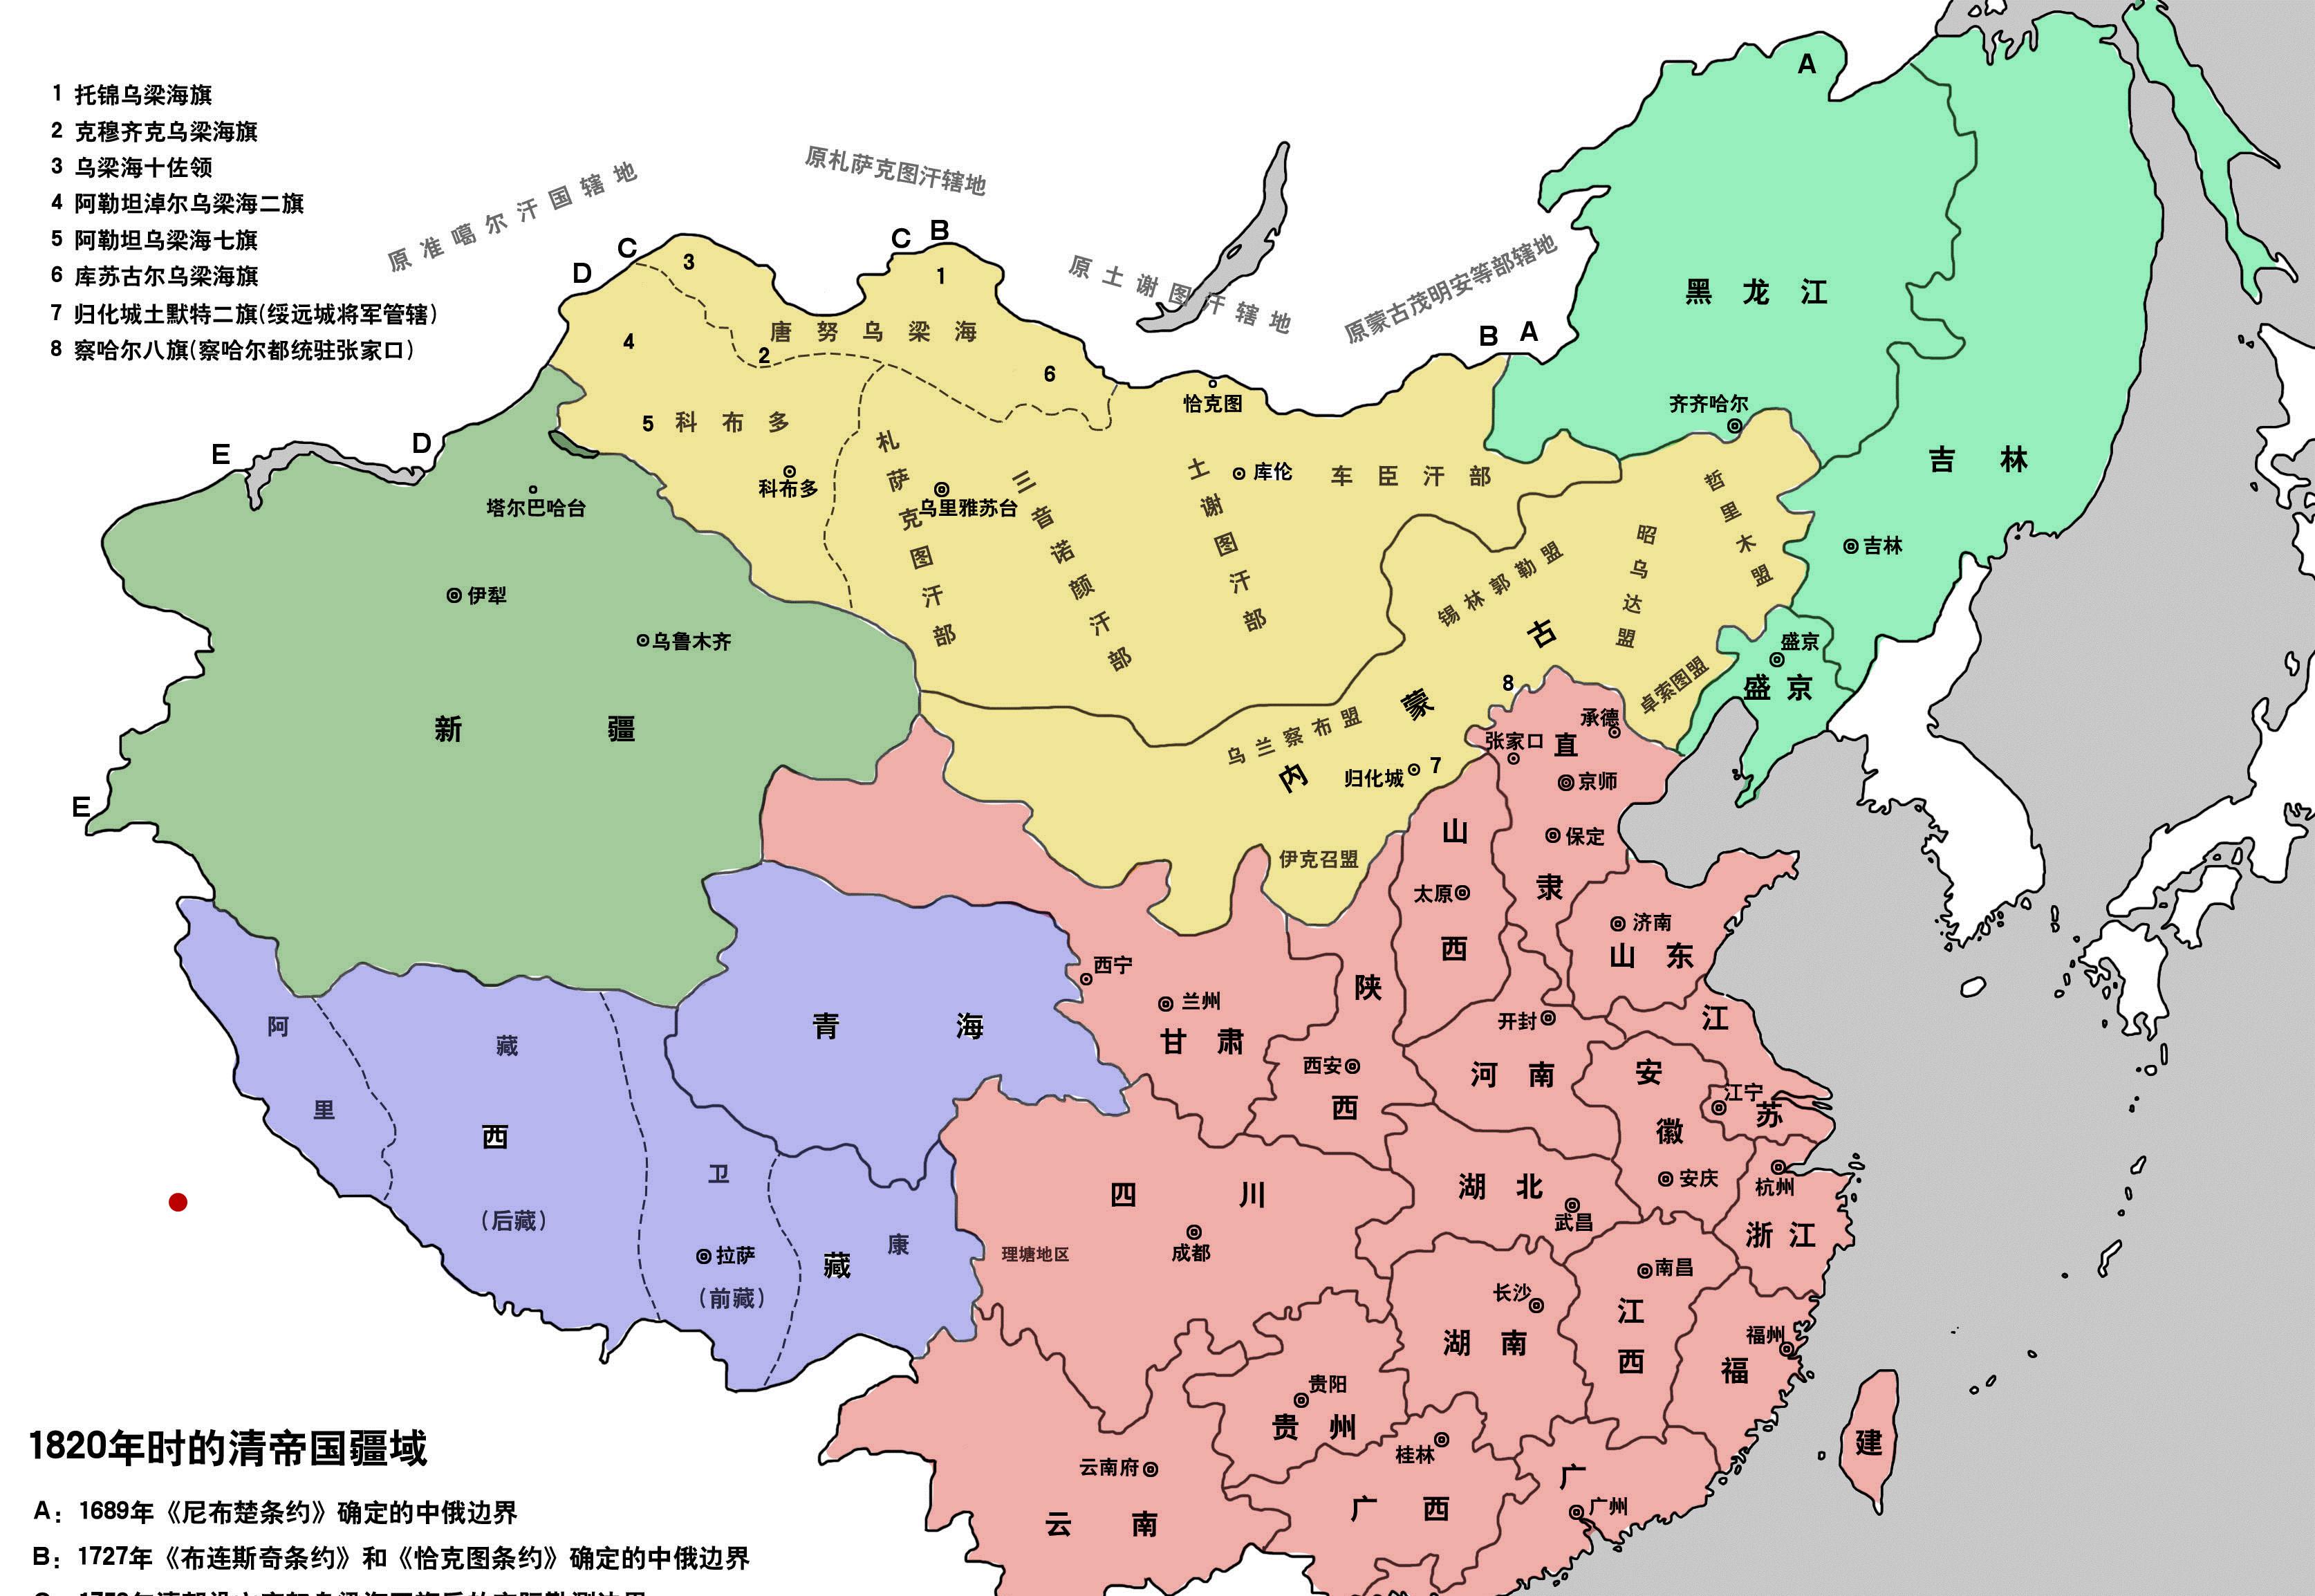 清朝版图理想传统版图首先从东北开始